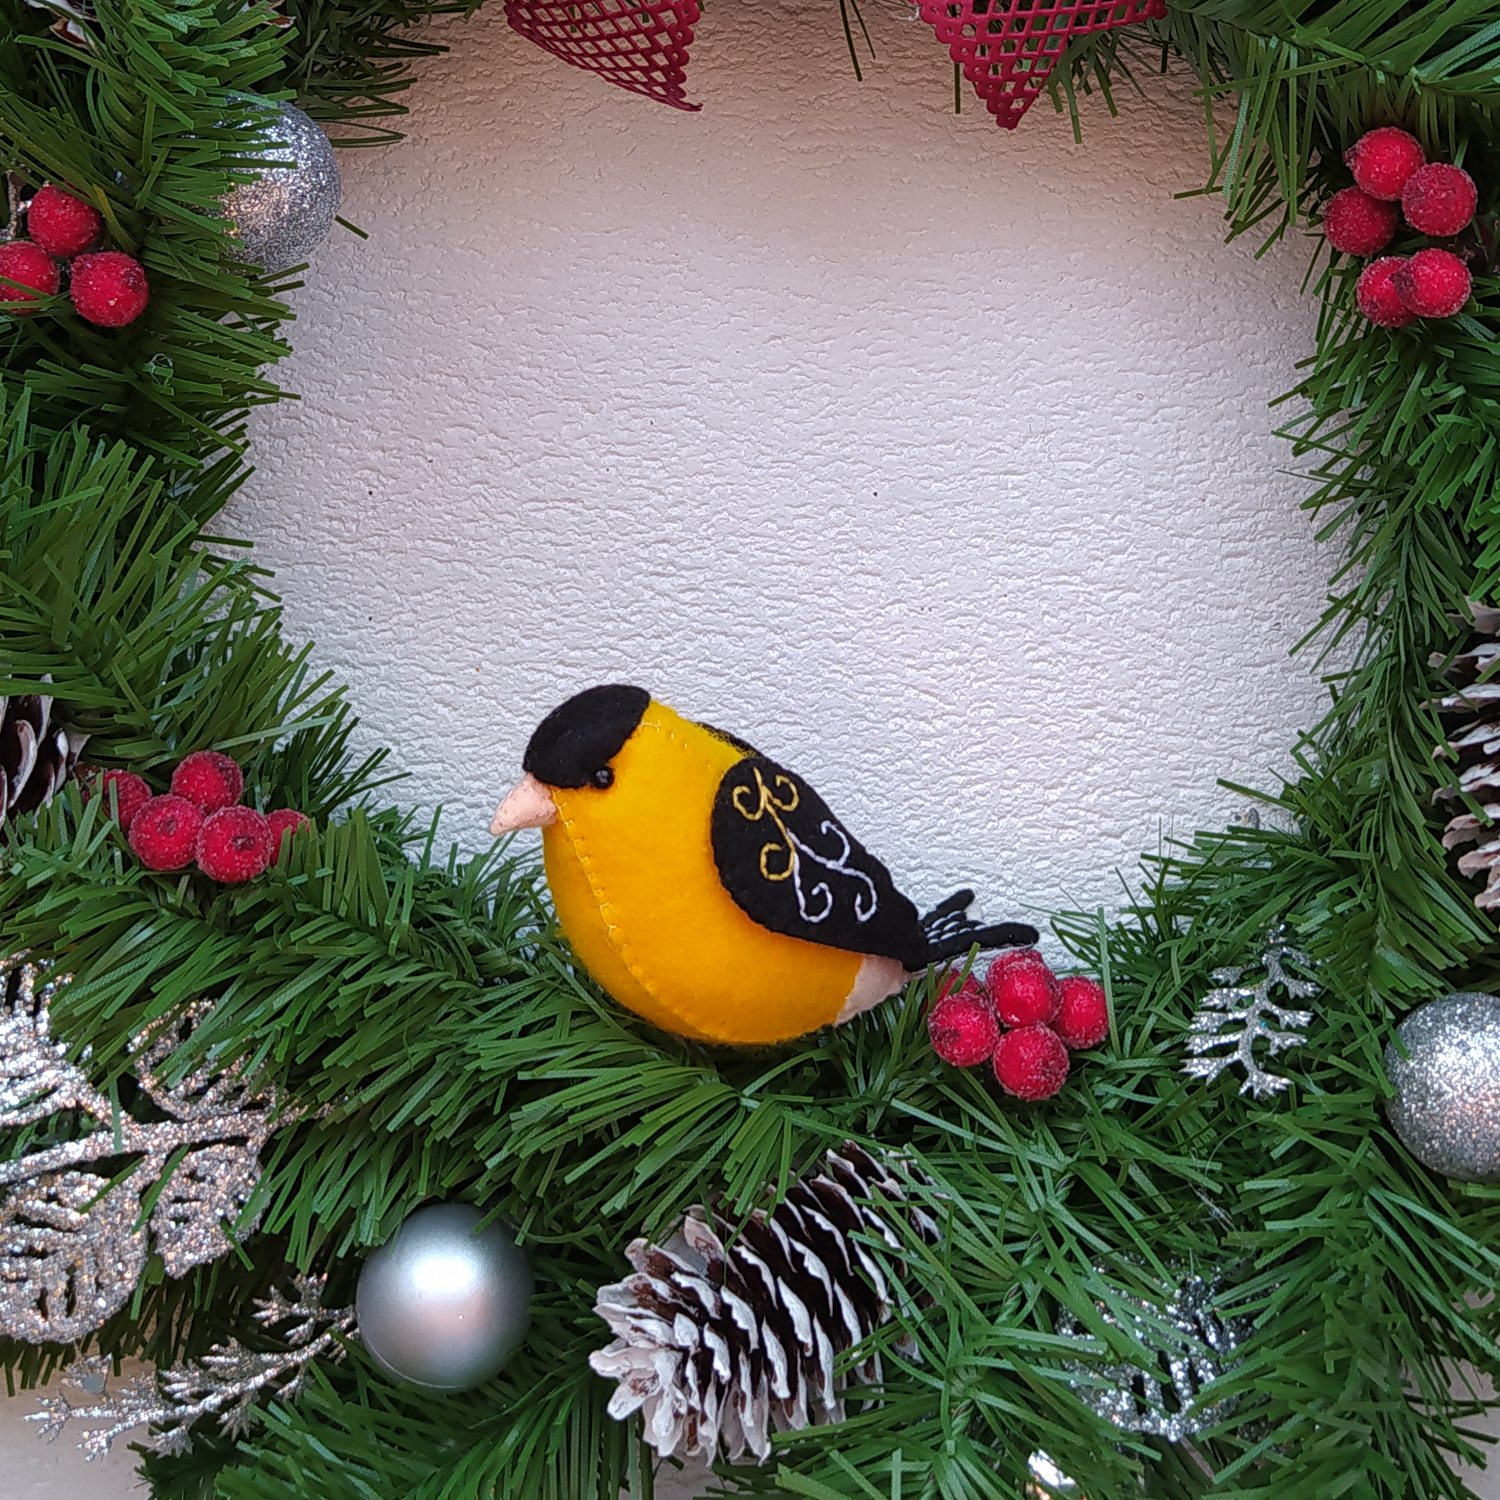 Christmas wreath with bird